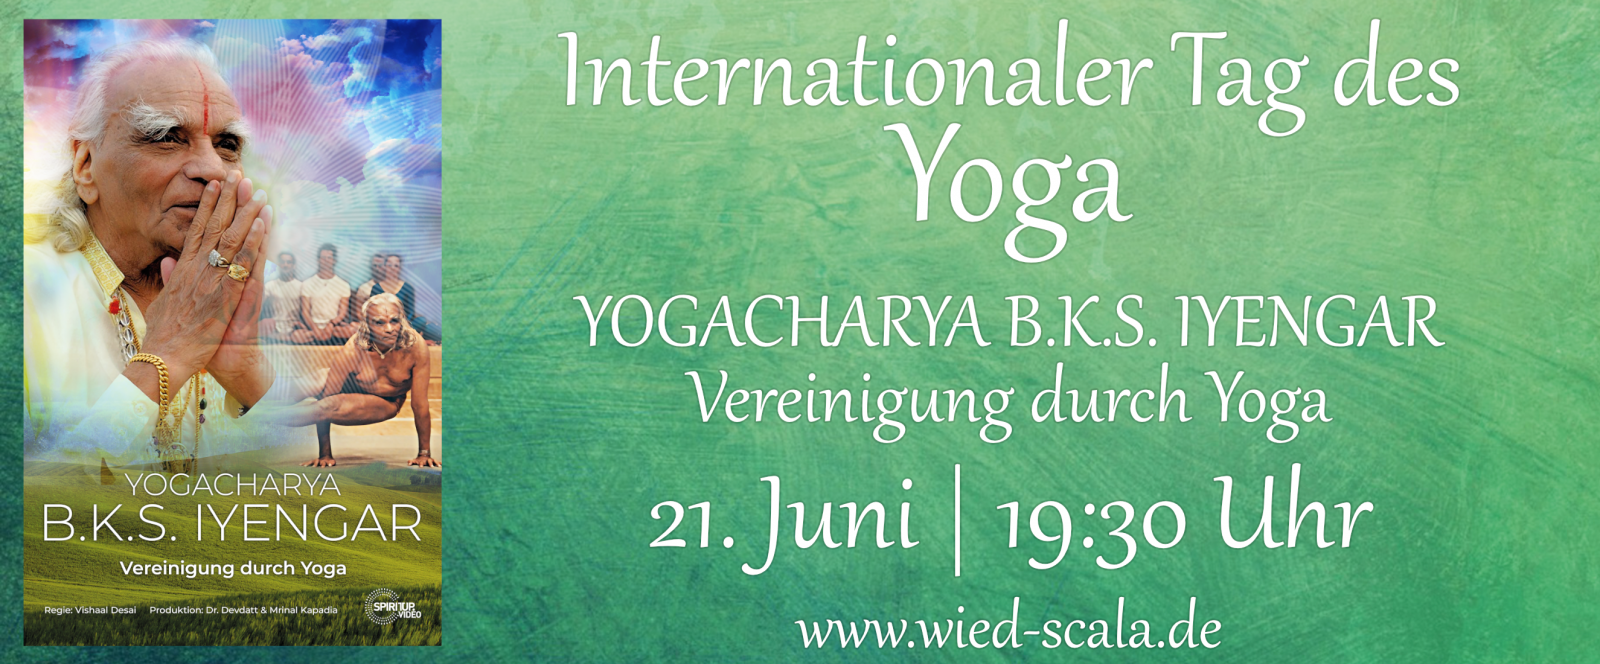 Internationaler Tag des Yoga